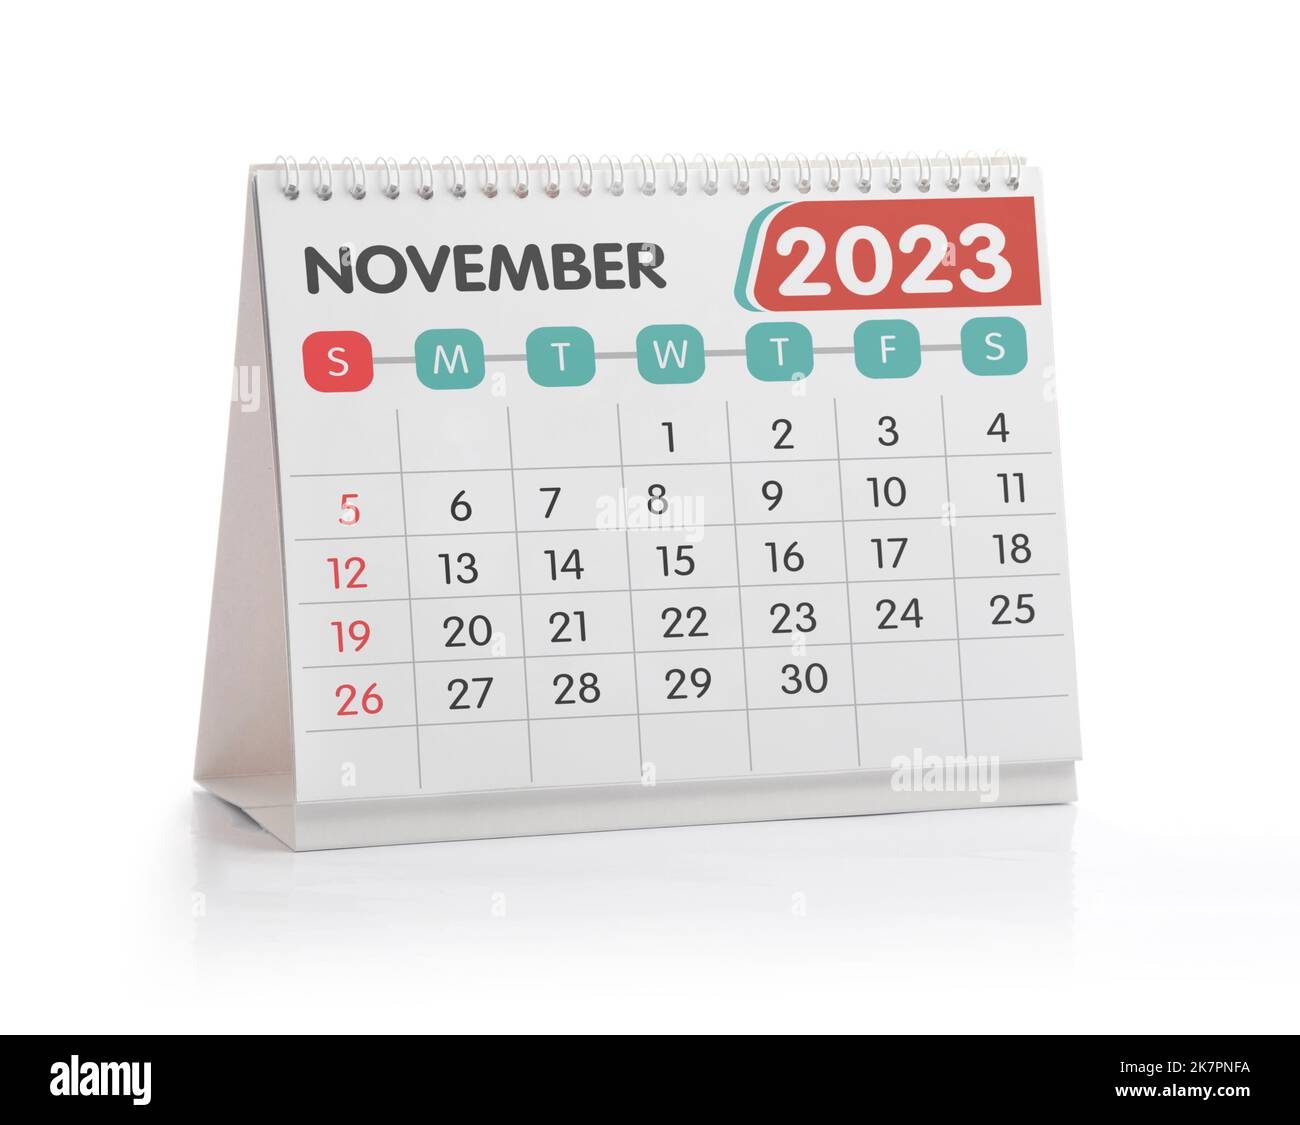 November 2023 Office Kalender isoliert auf Weiß Stockfoto